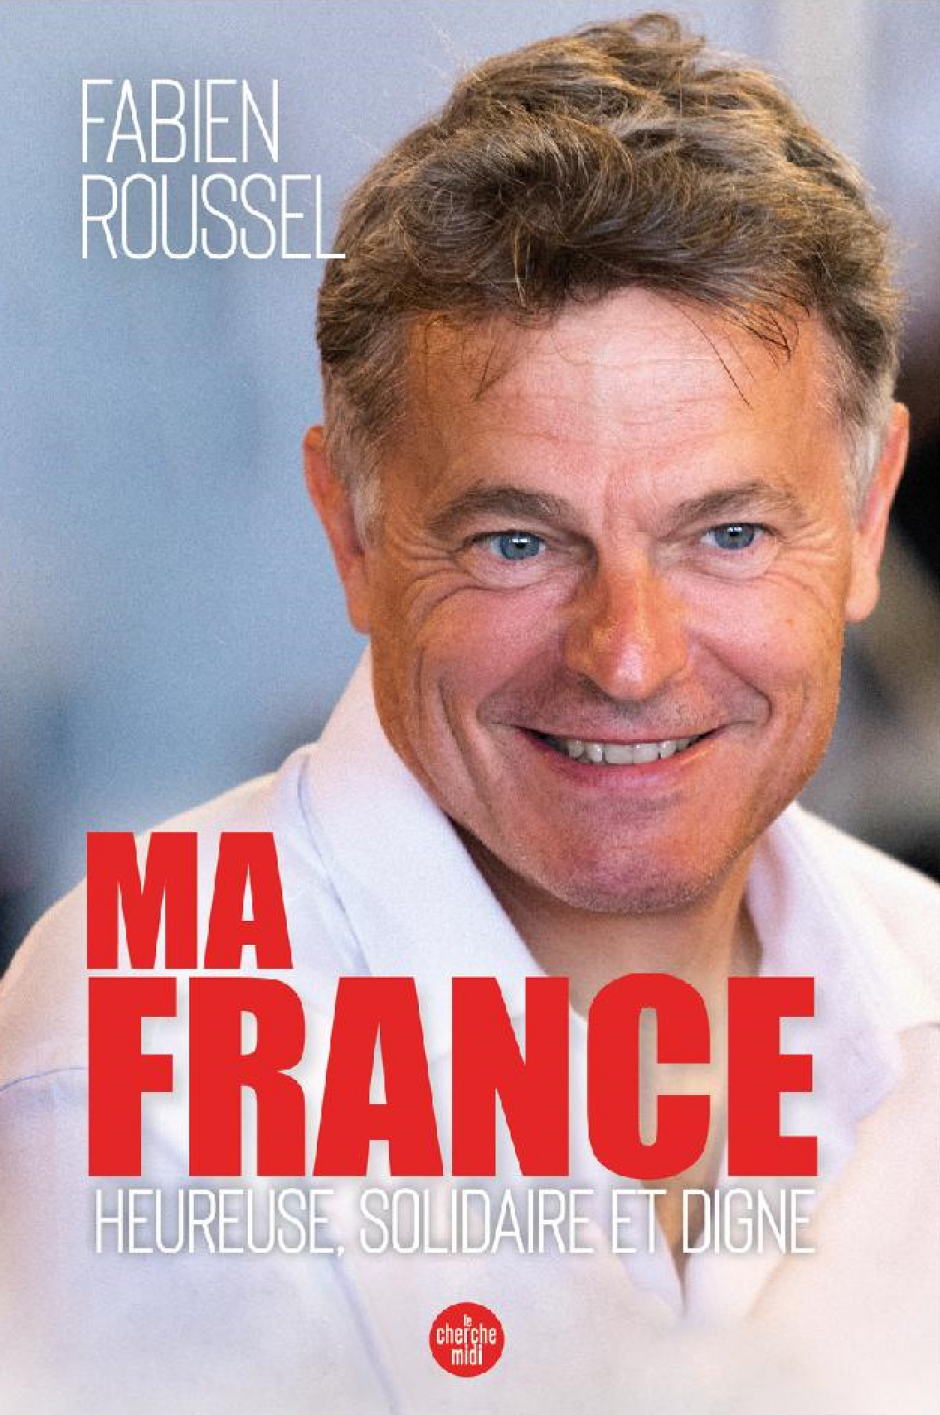 Le livre de Fabien Roussel « Ma France, heureuse, solidaire et digne » est disponible : contactez-nous